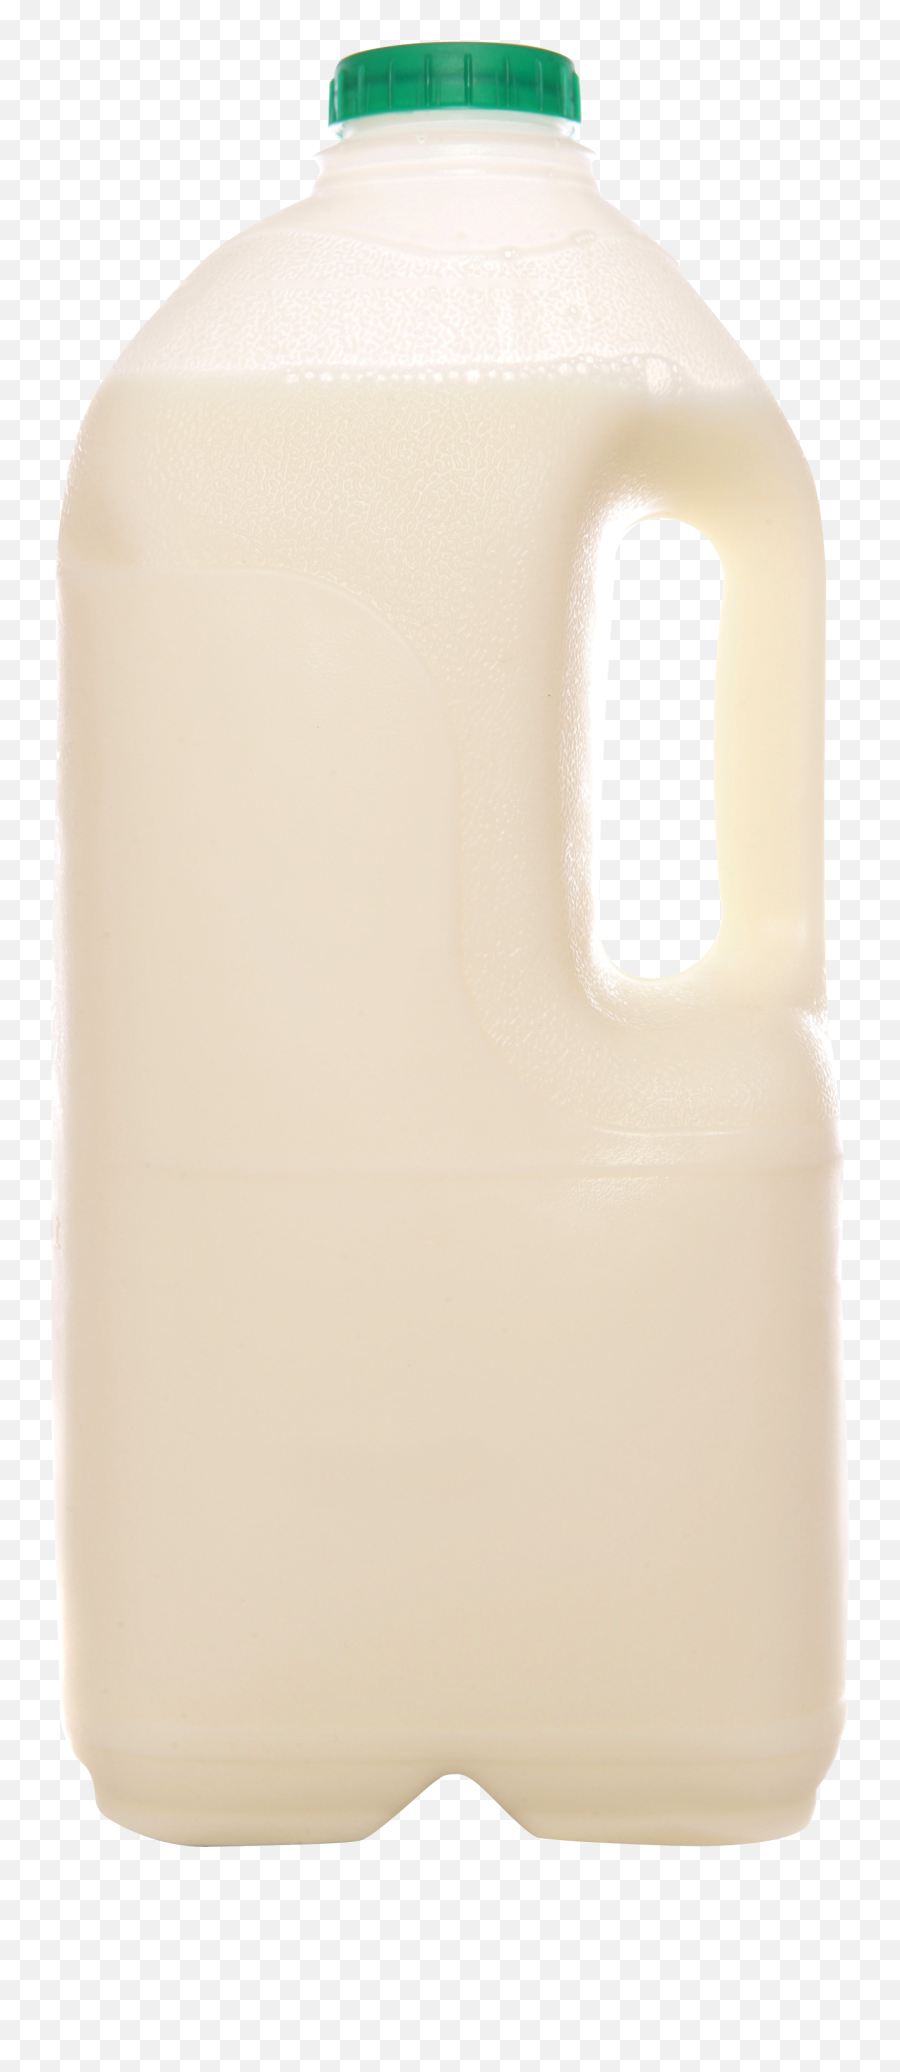 Milk Can Png Transparent Image - Household Supply Emoji,Milk Transparent Background